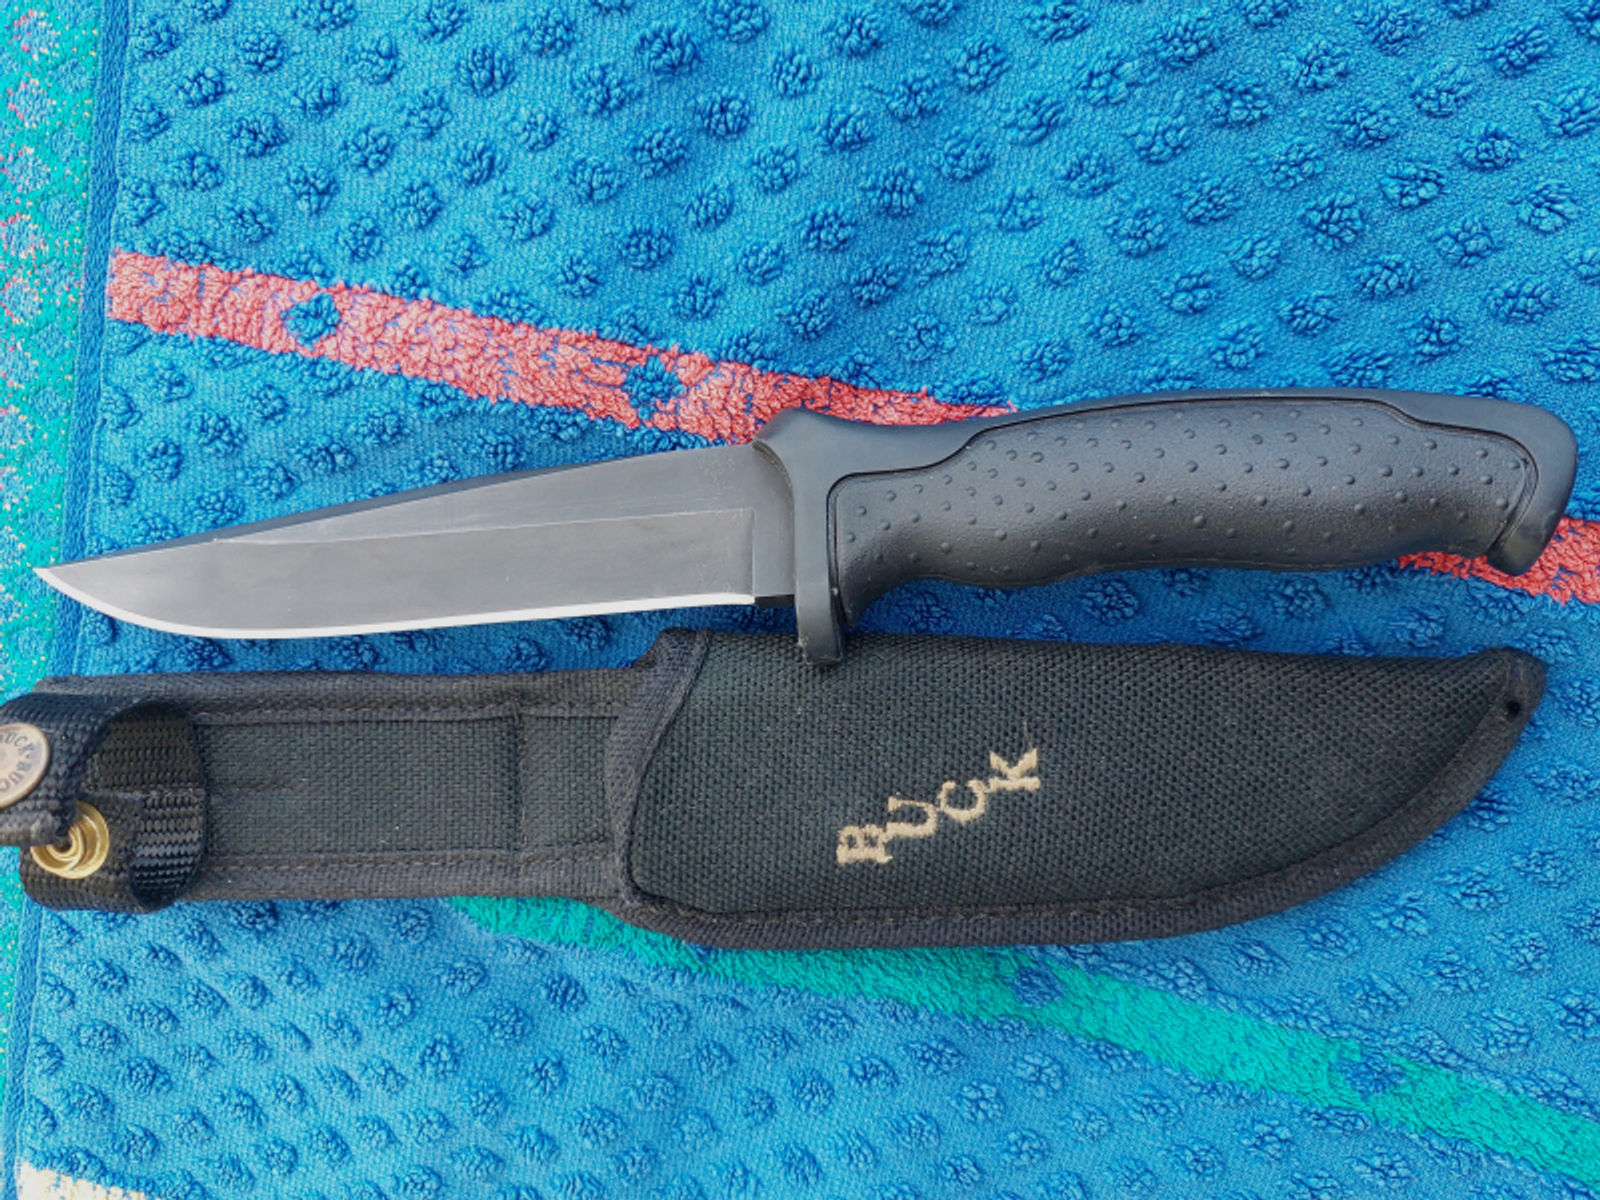 Frühes BUCK 650 Messer, unbenutzt, Bj. 1996 in USA